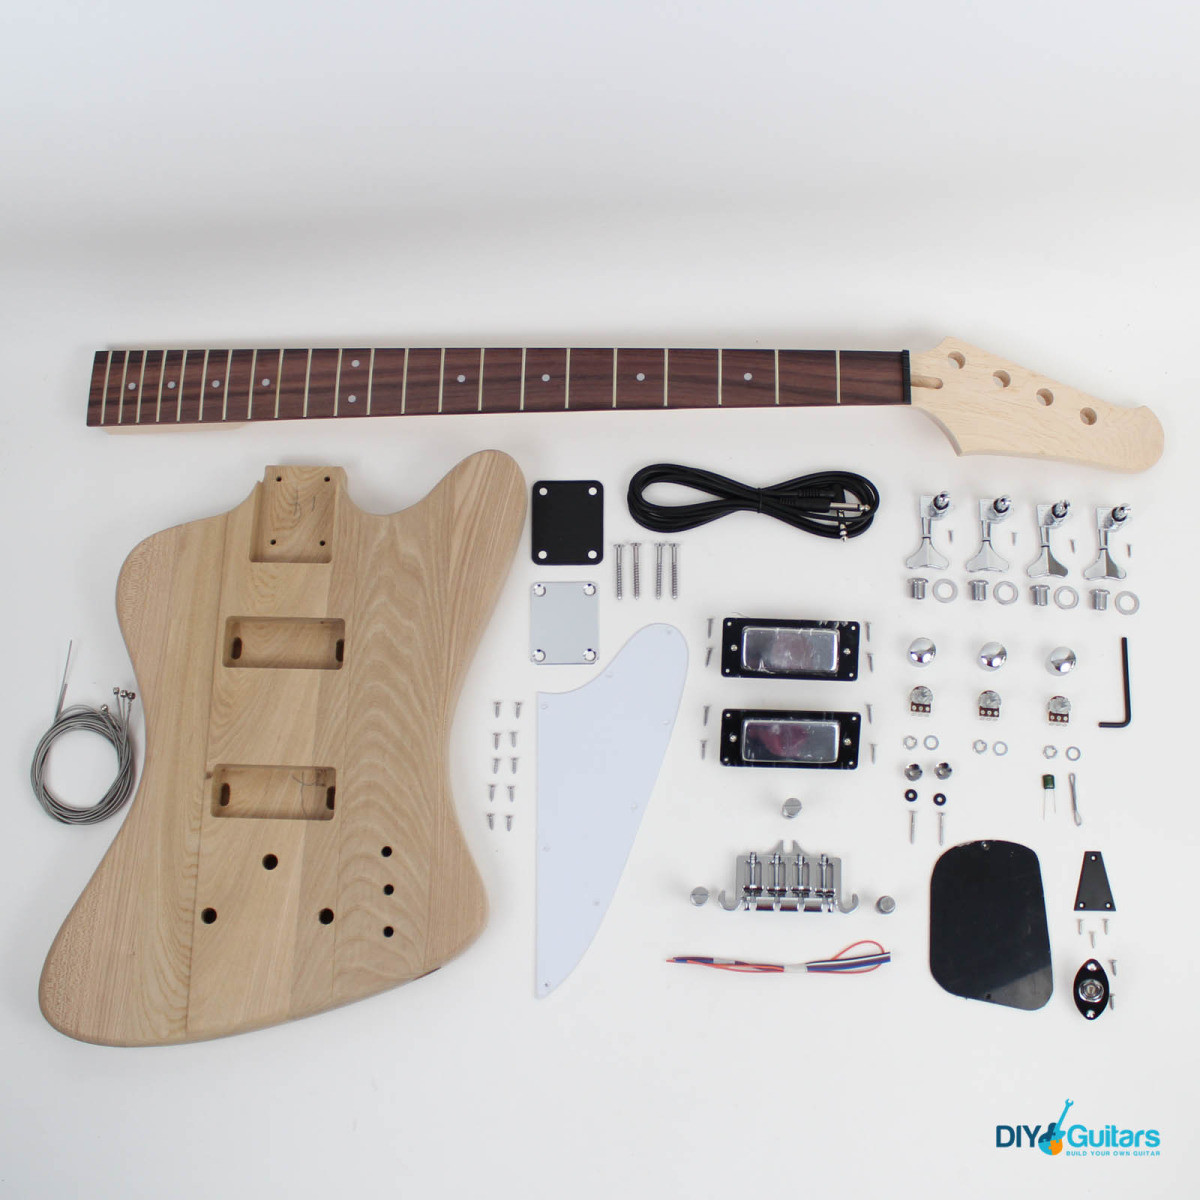 Best ideas about DIY Bass Guitar Kit
. Save or Pin Gibson Thunderbird Style Bass Guitar Kit DIY Guitars Now.